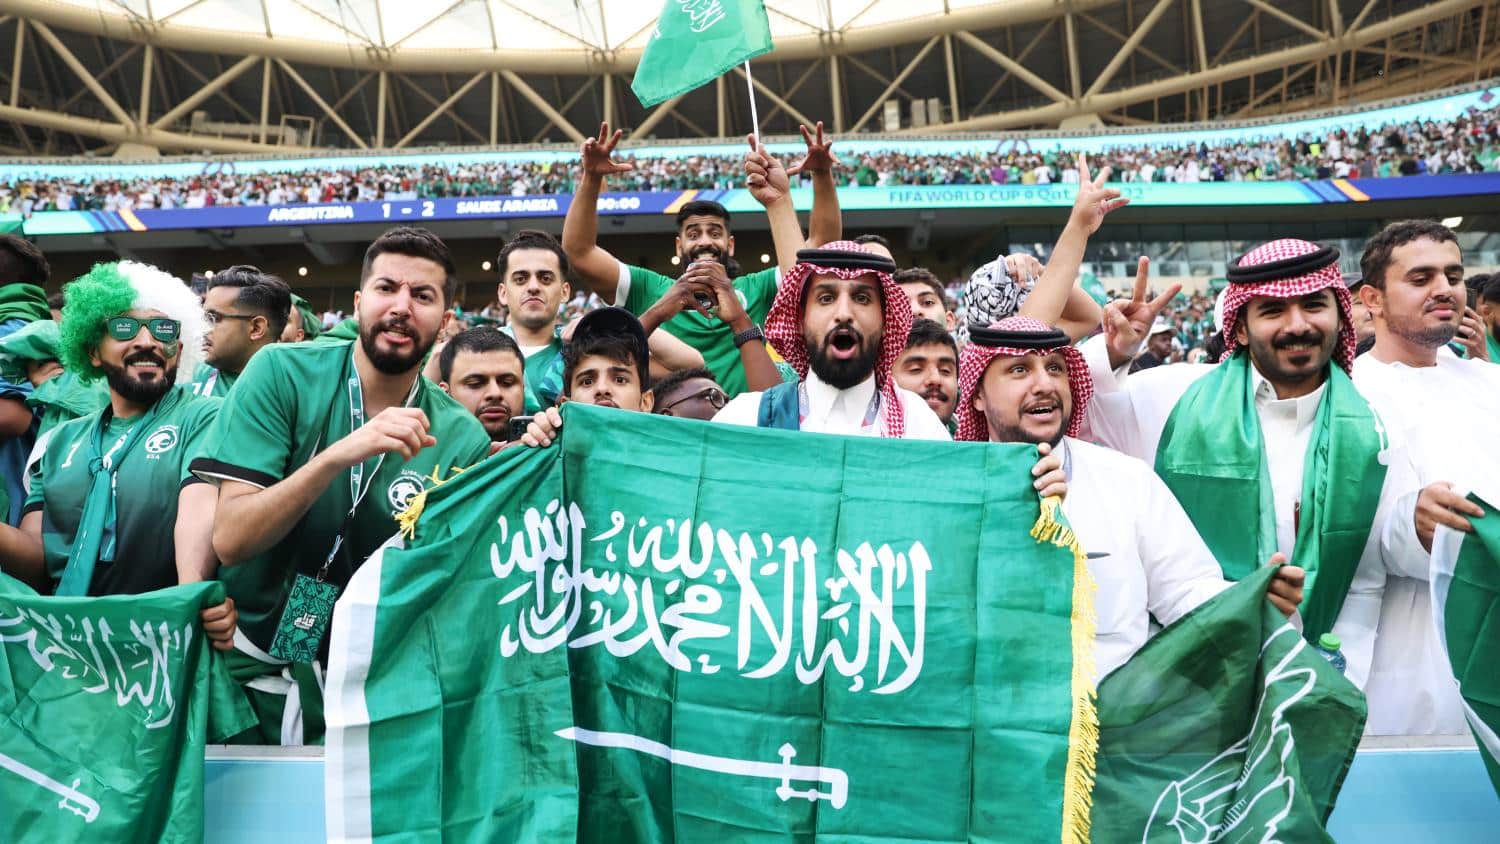 CĐV Arab Saudi tại World Cup 2022 - nơi đội tuyển của họ đánh bại Argentina ở vòng bảng. Ảnh: AP